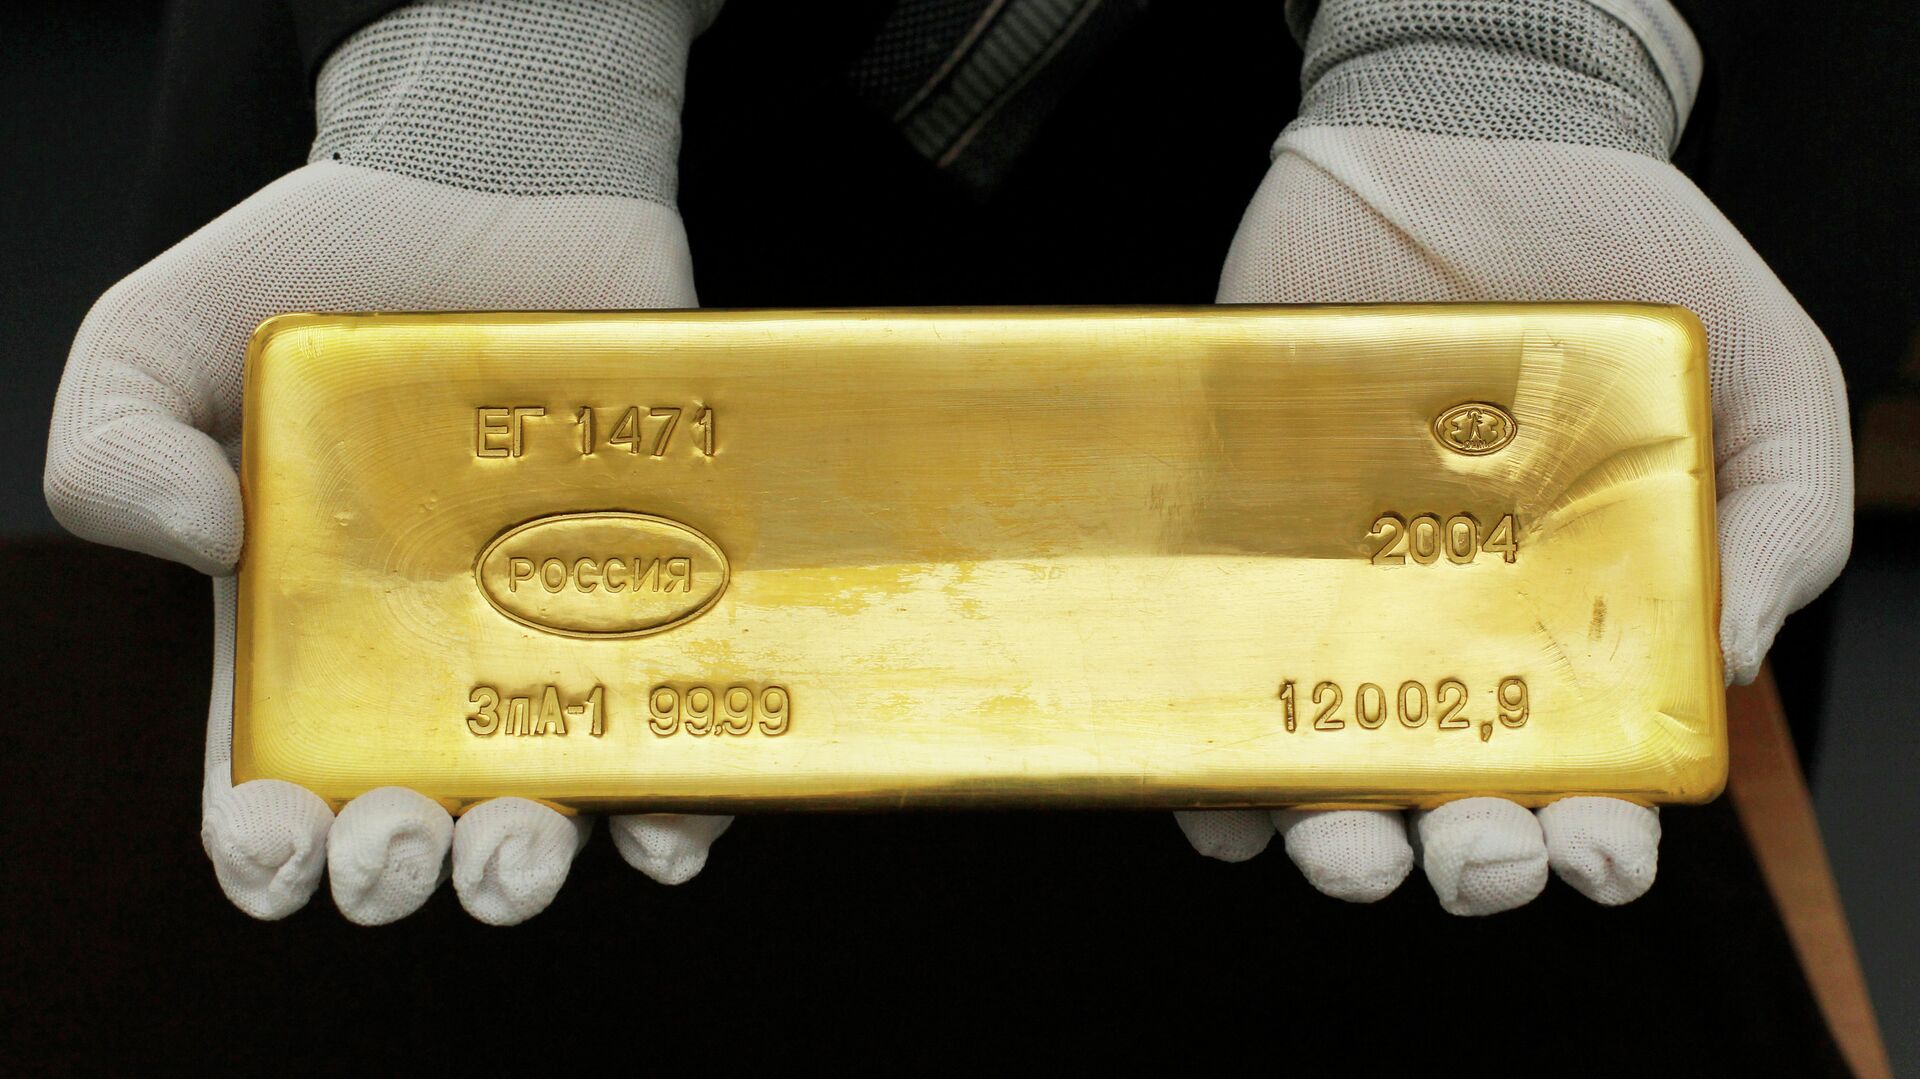 Купить золото в слитках: стоимость и вес золотых слитков